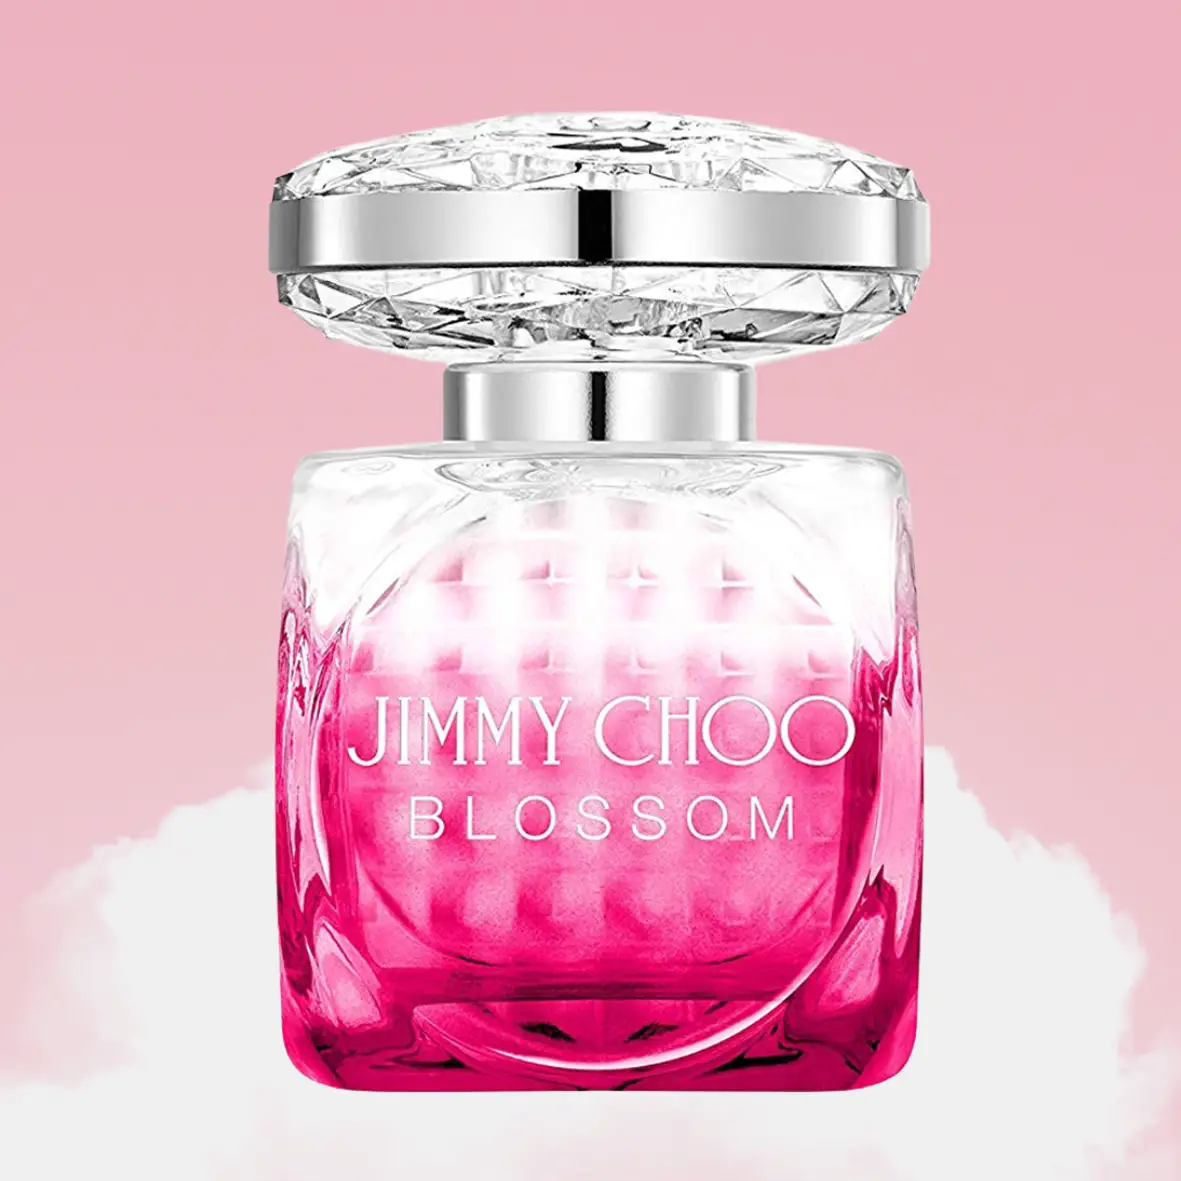 Jimmy Choo Blossom Nước hoa hương đào ngọt ngào nhất